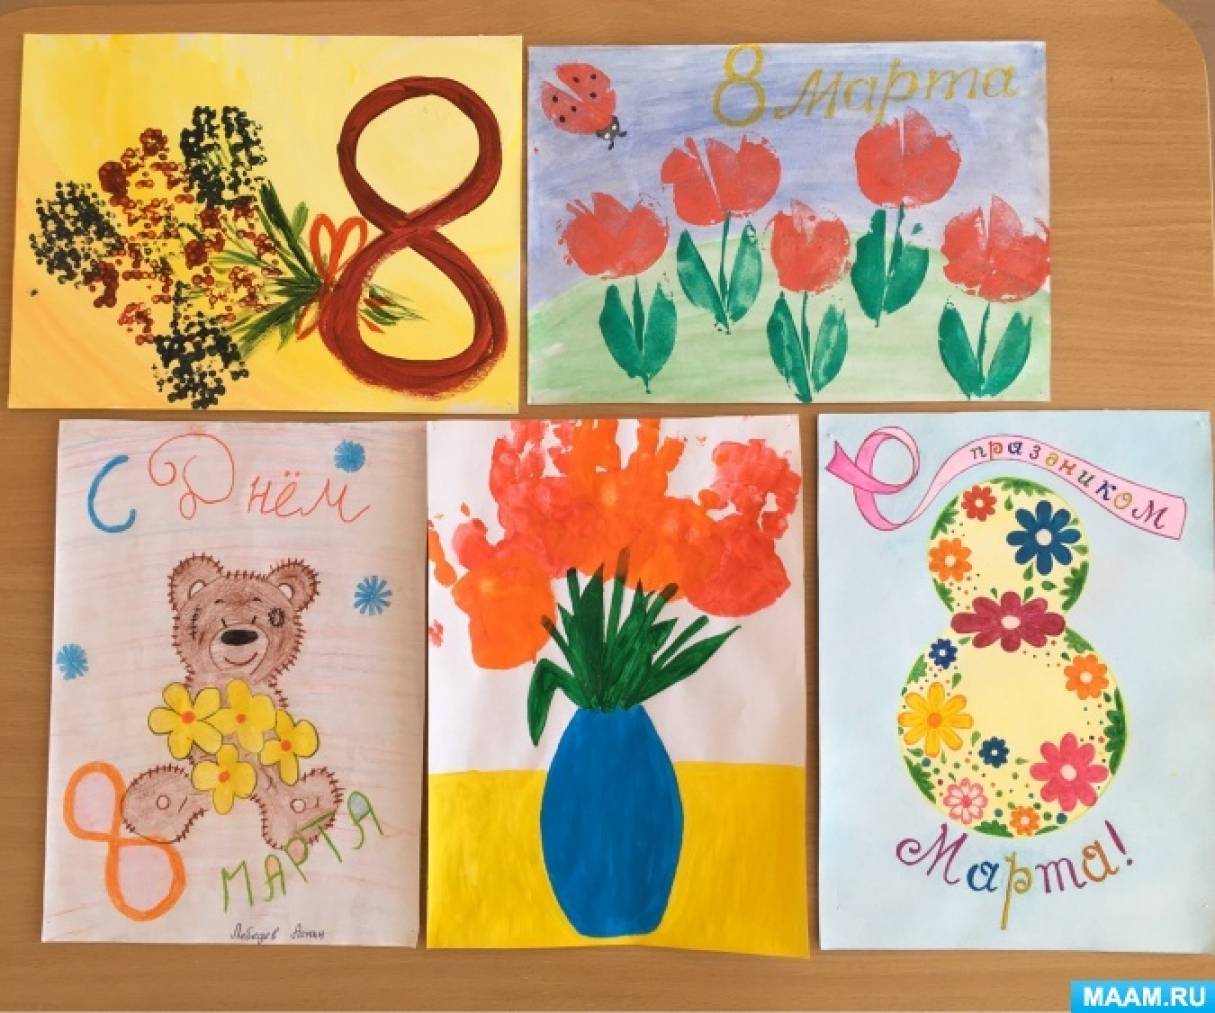 Благотворительные открытки с детскими рисунками можно купить в отделениях Почты Волгограда